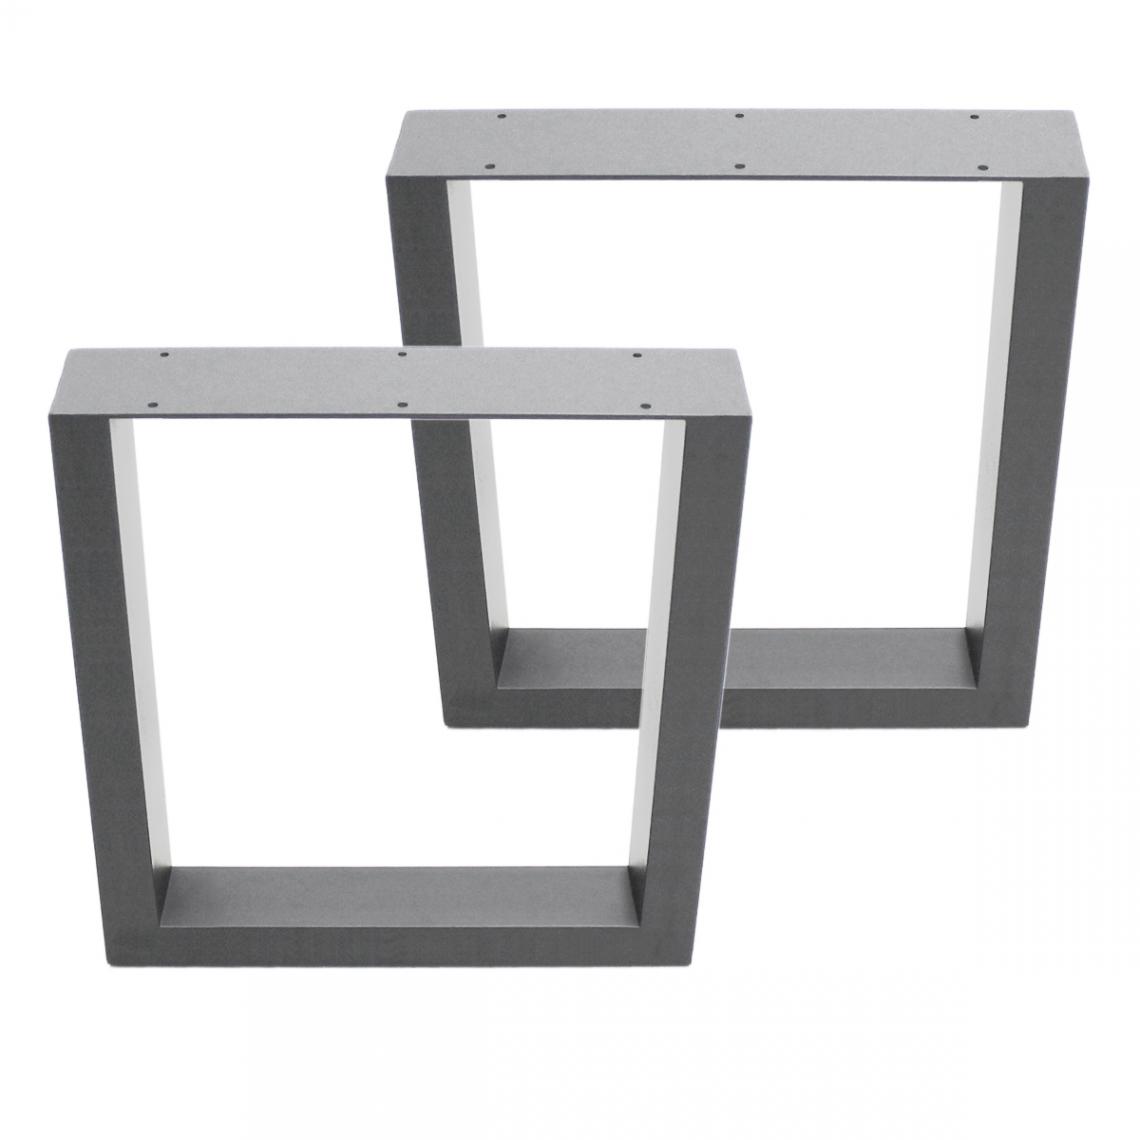 Ecd Germany - Set 2 Pieds de table piètement banc en acier design industriel gris 40 x 43 cm - Pieds & roulettes pour meuble